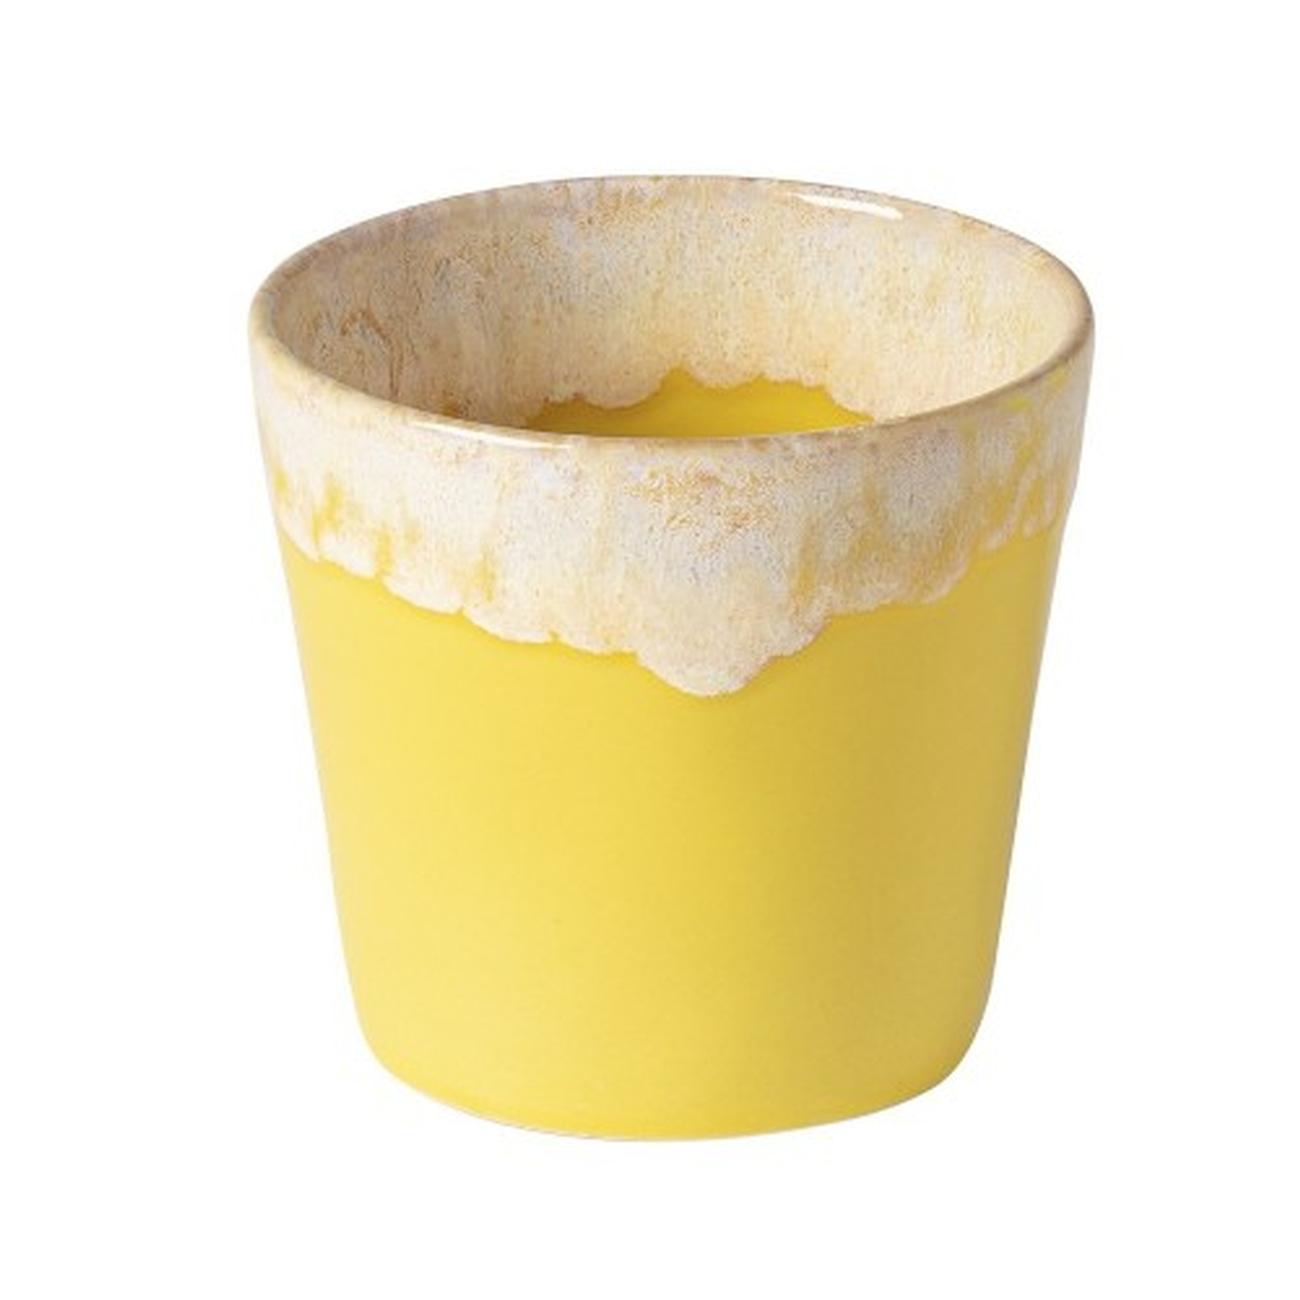 costa-nova-grespresso-lungo-espresso-cup-0-2l-yellow - Costa Nova Grespresso Lungo Espresso Cup-0.2L Yellow